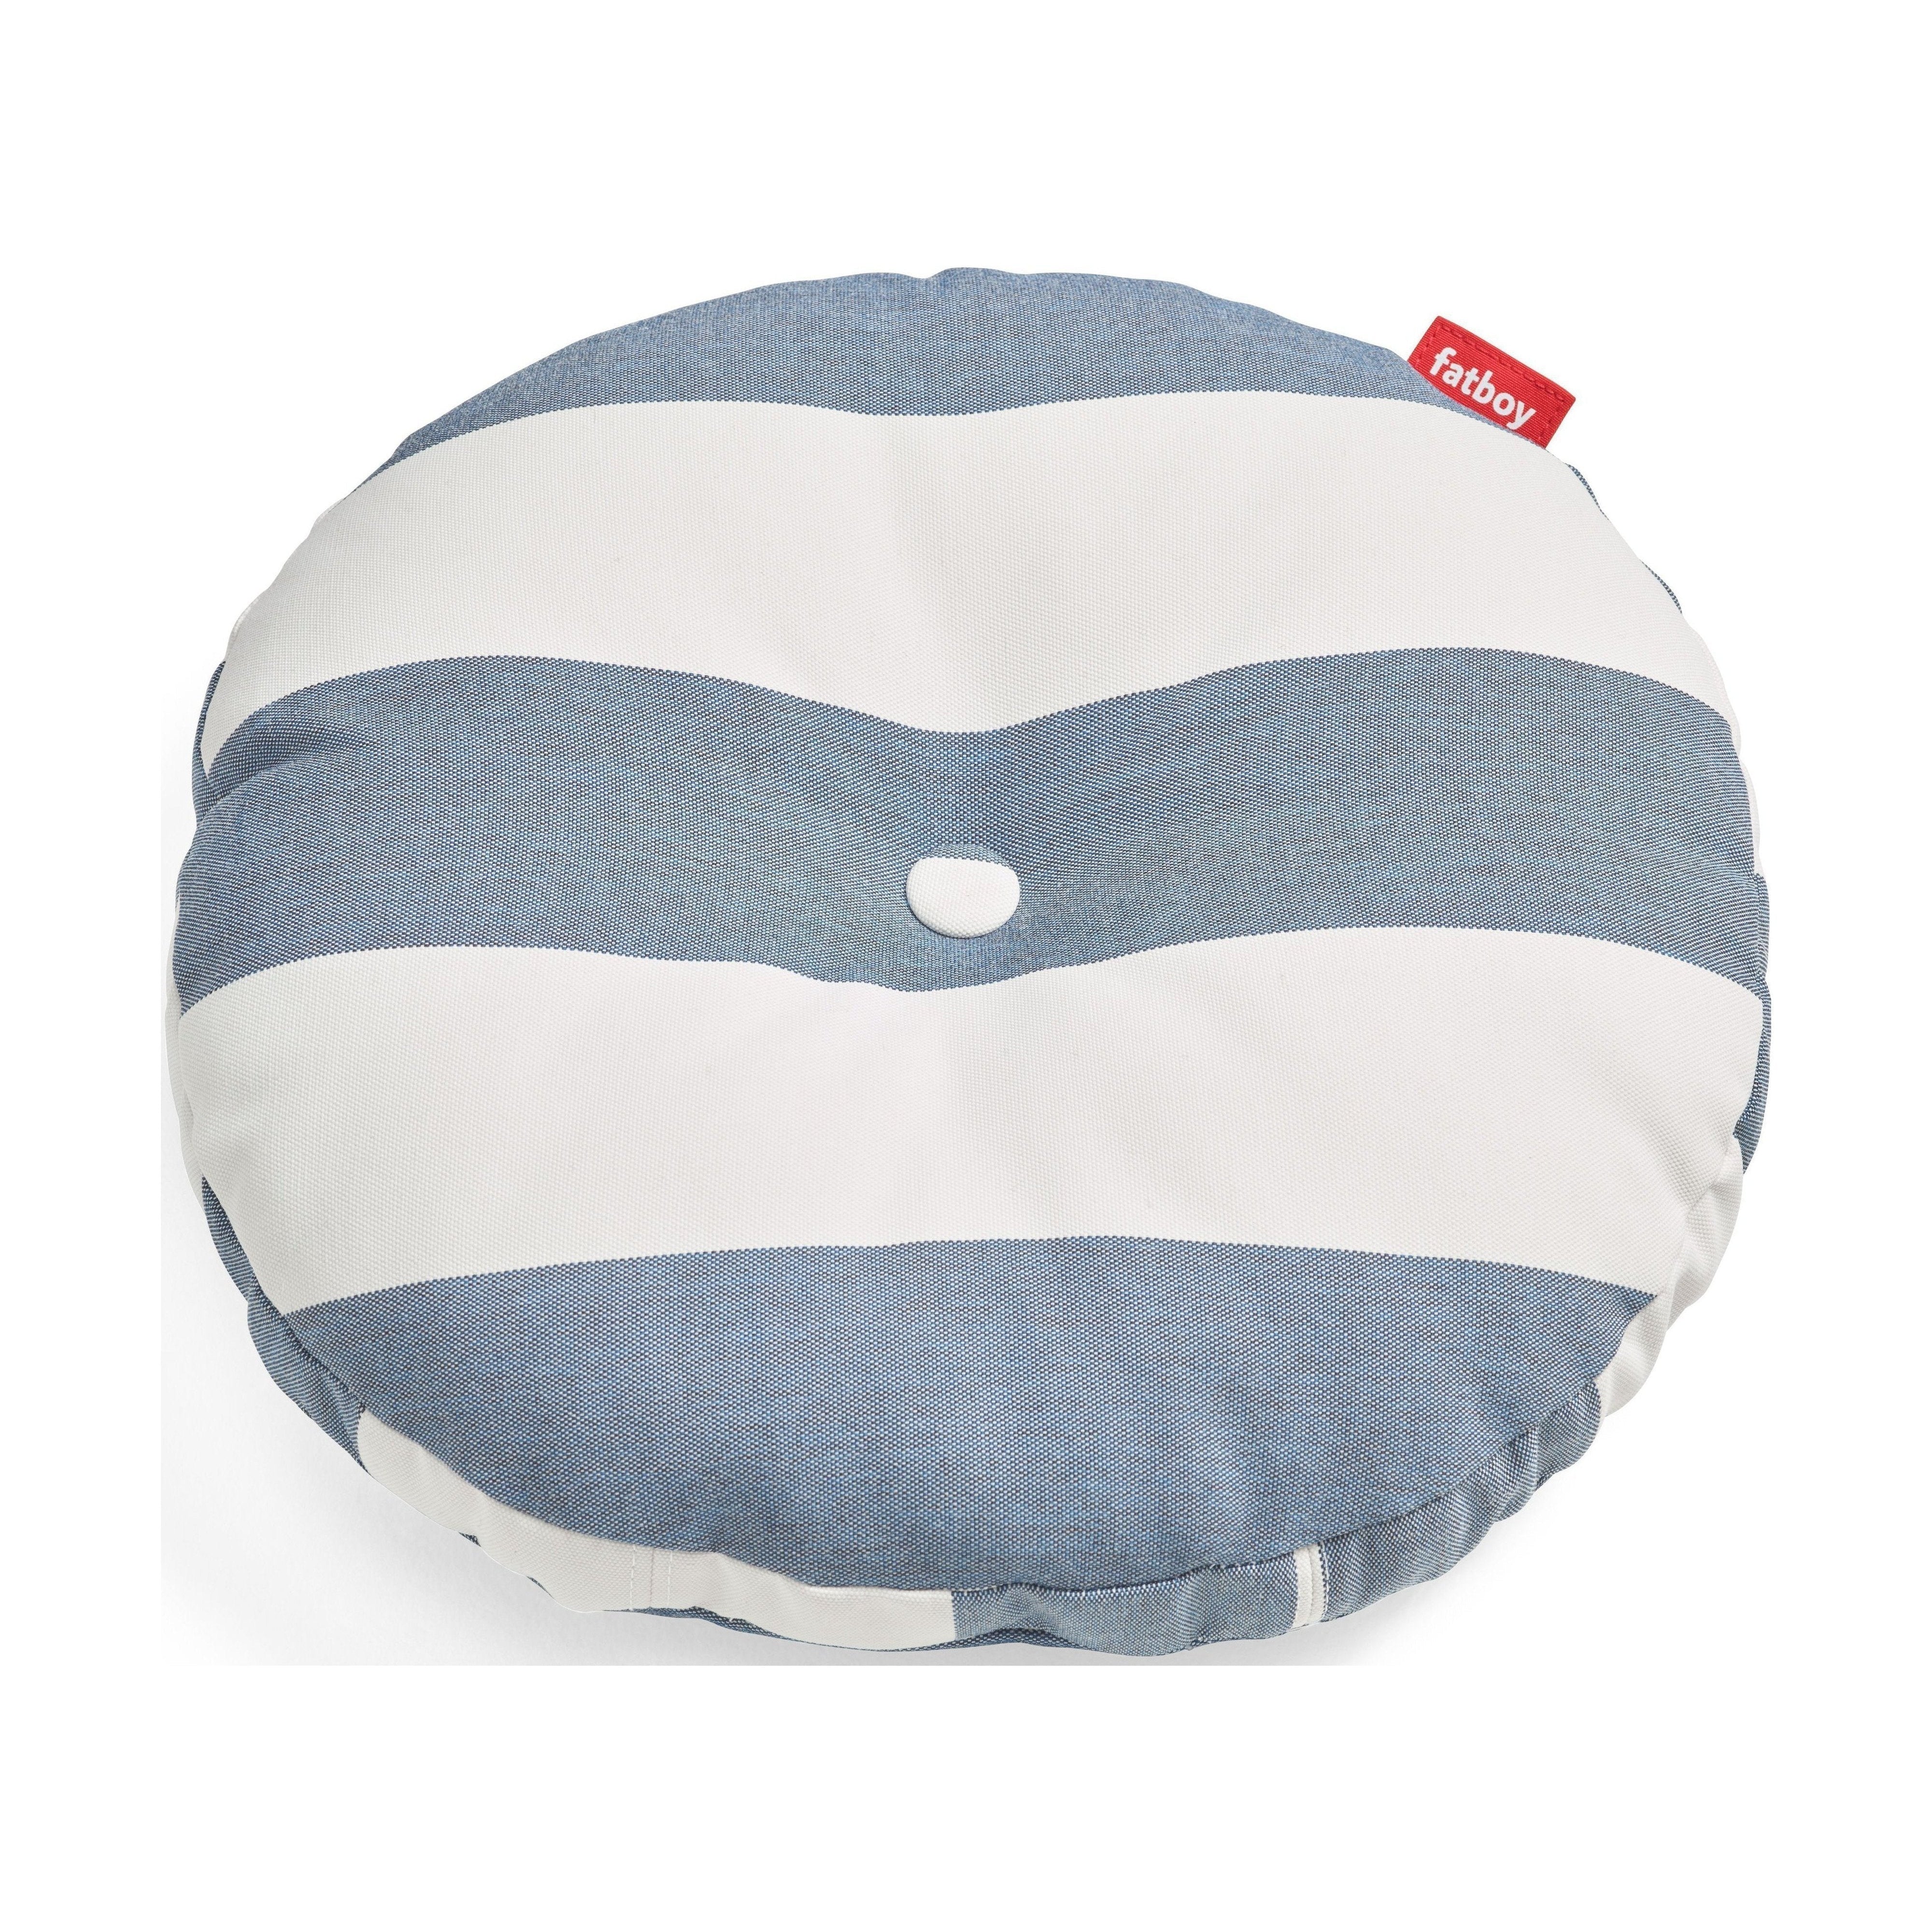 Fatboy Circle Pillow Outdoor Round Garden Pude, Stripe Ocean Blue